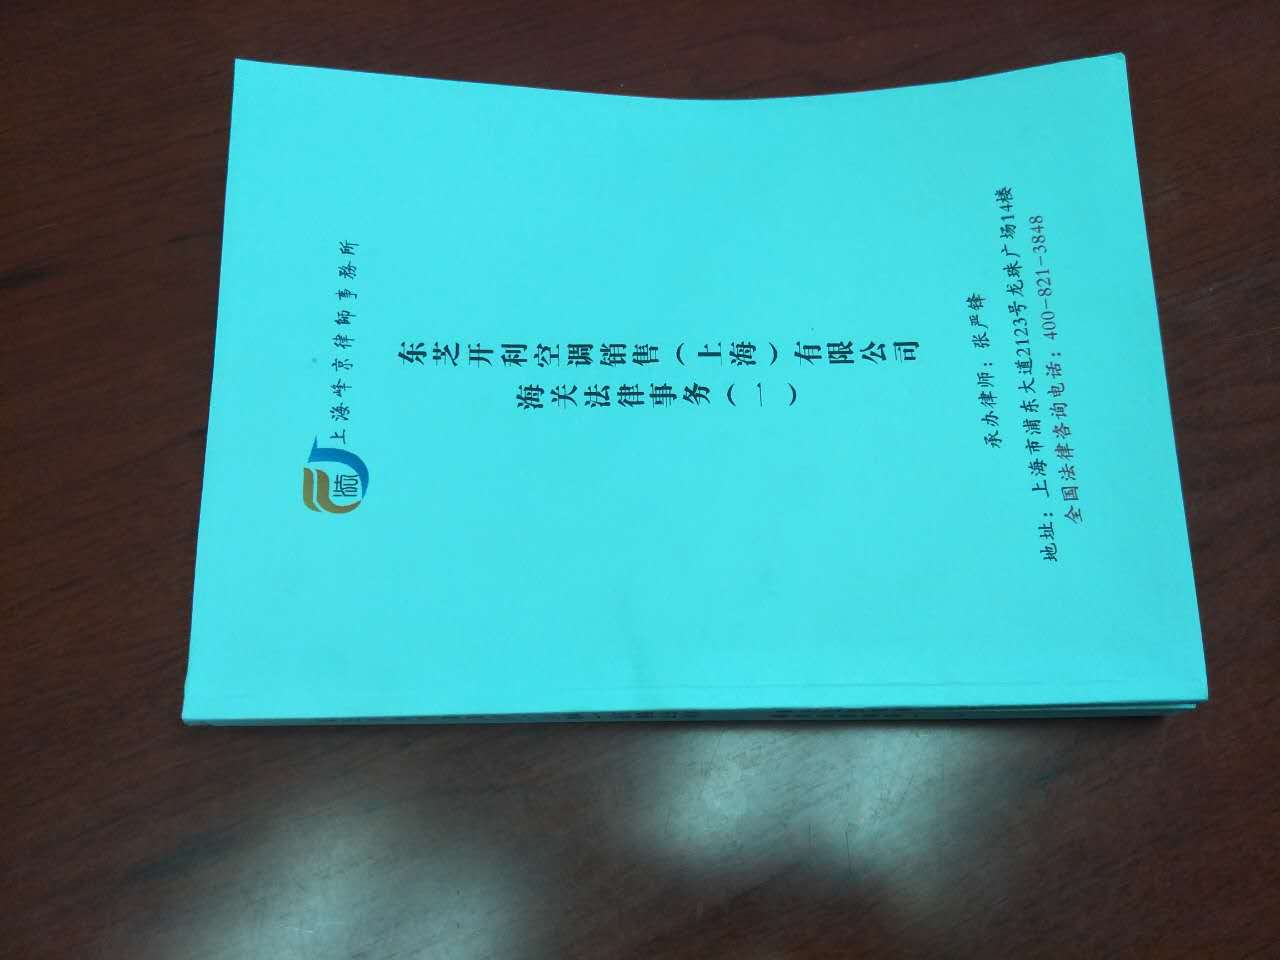 上海峰京律师事务所张严锋主任接受东芝空调委托就其涉及产品归类及税率提供专业海关法律师意见